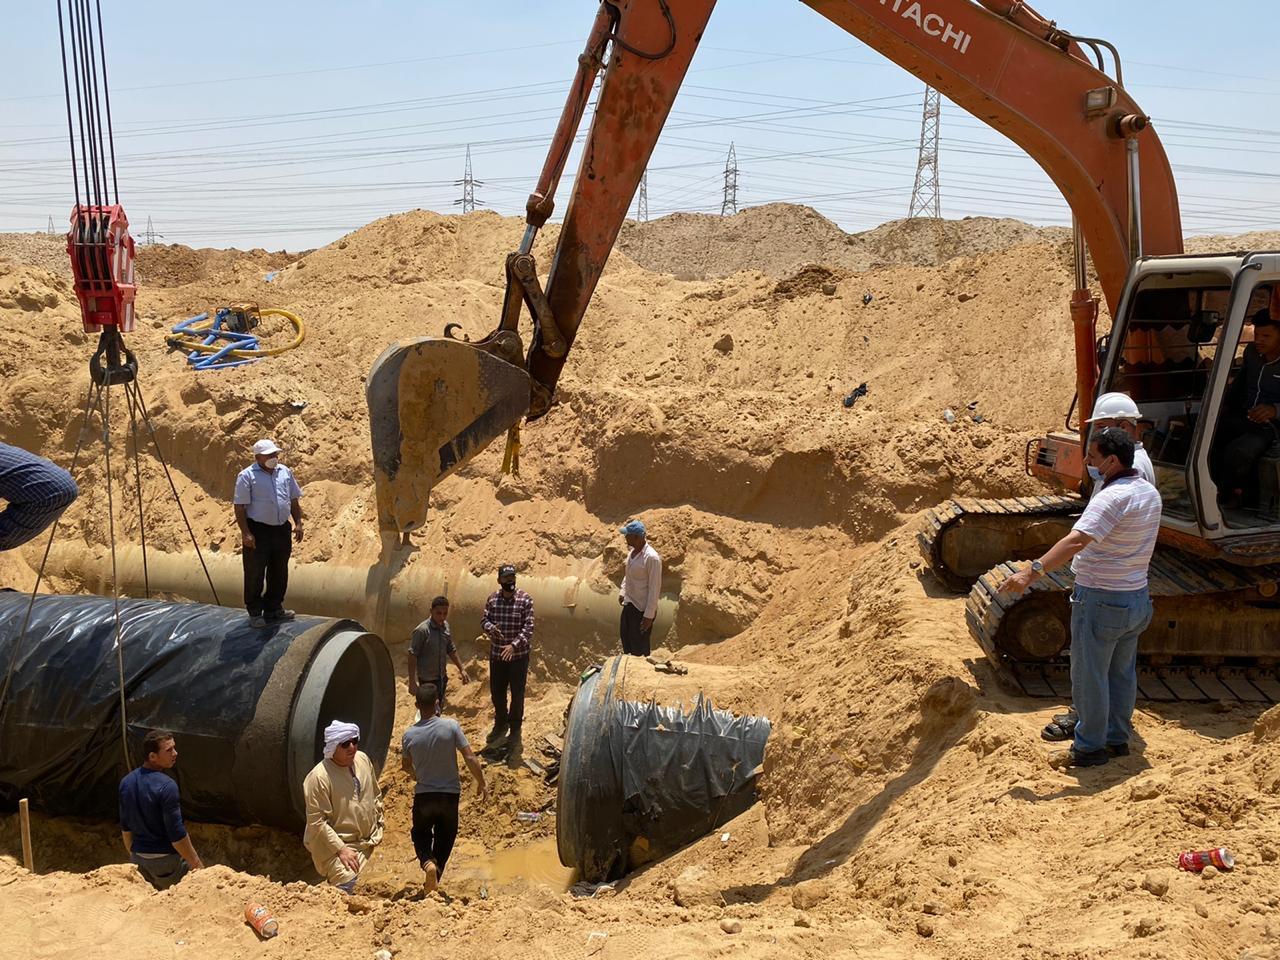   رئيس الجهاز: الانتهاء من ربط خط المياه لتغذية المناطق الصناعية الثقيلة بمدينة العاشر من رمضان